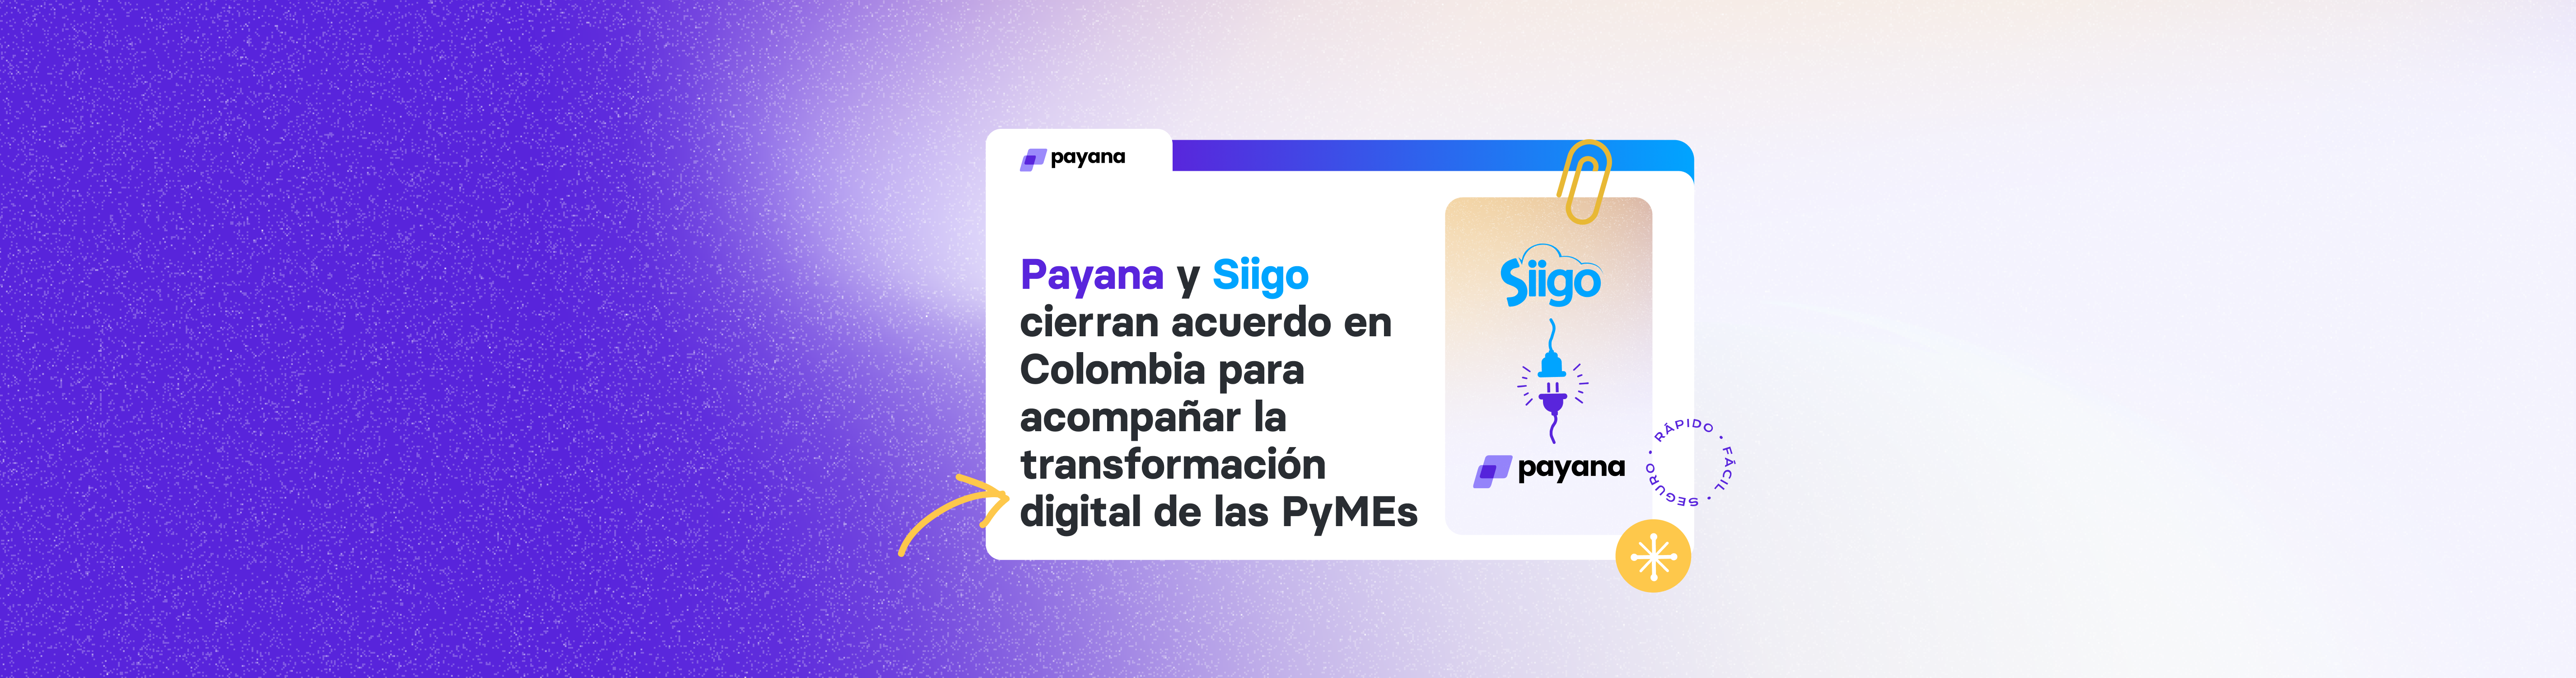 Payana y Siigo cierran acuerdo en Colombia para acompañar la transformación digital de las PyMEs